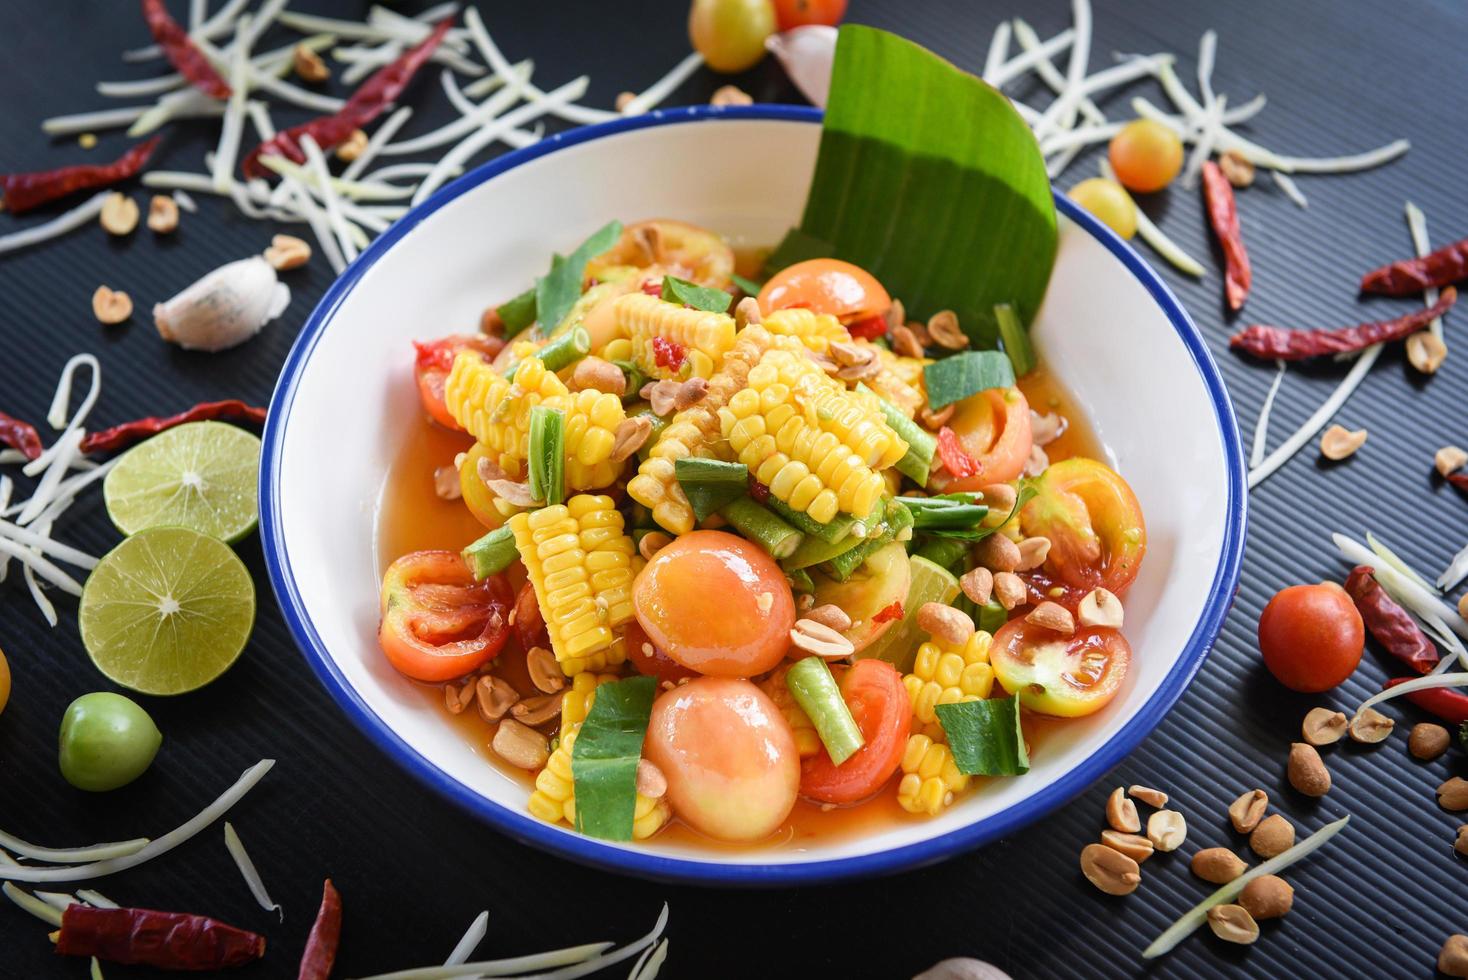 salade de maïs alimentaire menu thaï salade épicée fruits et légumes herbes et épices ingrédients avec piment tomate cacahuète ail servi sur assiette photo